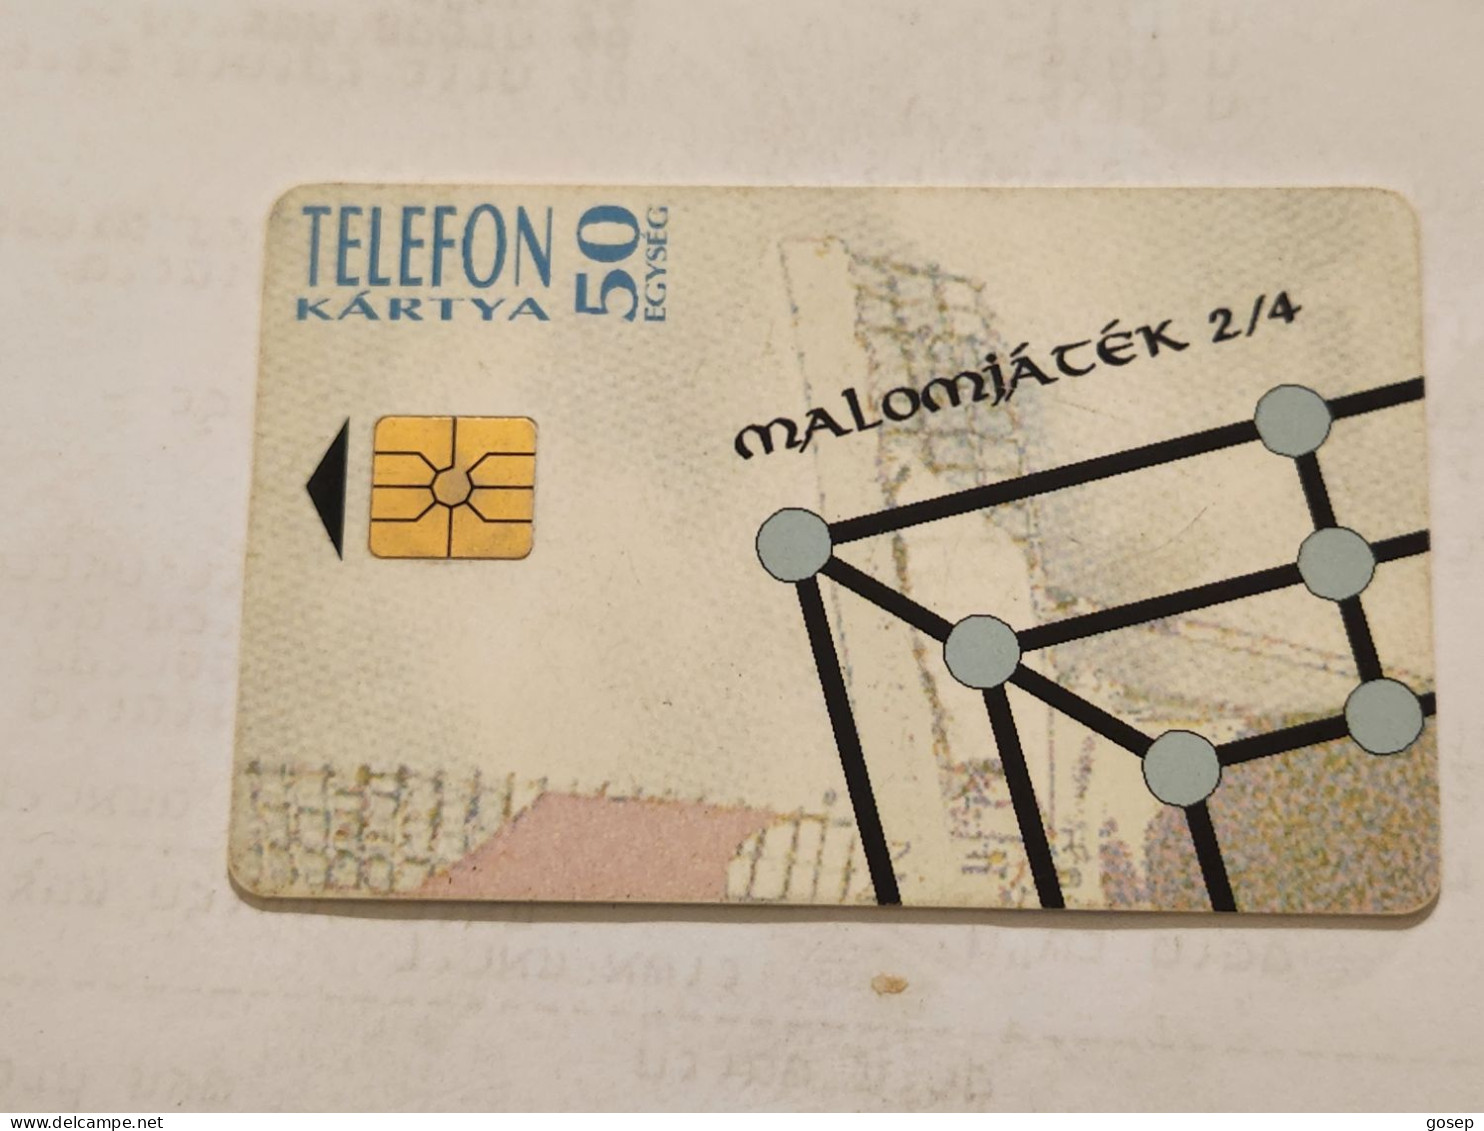 HUNGARY-(HU-P-1994-18Aa)-Malom -Tata (2/4)-(154)(50units)(1994)(tirage-250.000)-USED CARD+1card Prepiad Free - Ungheria